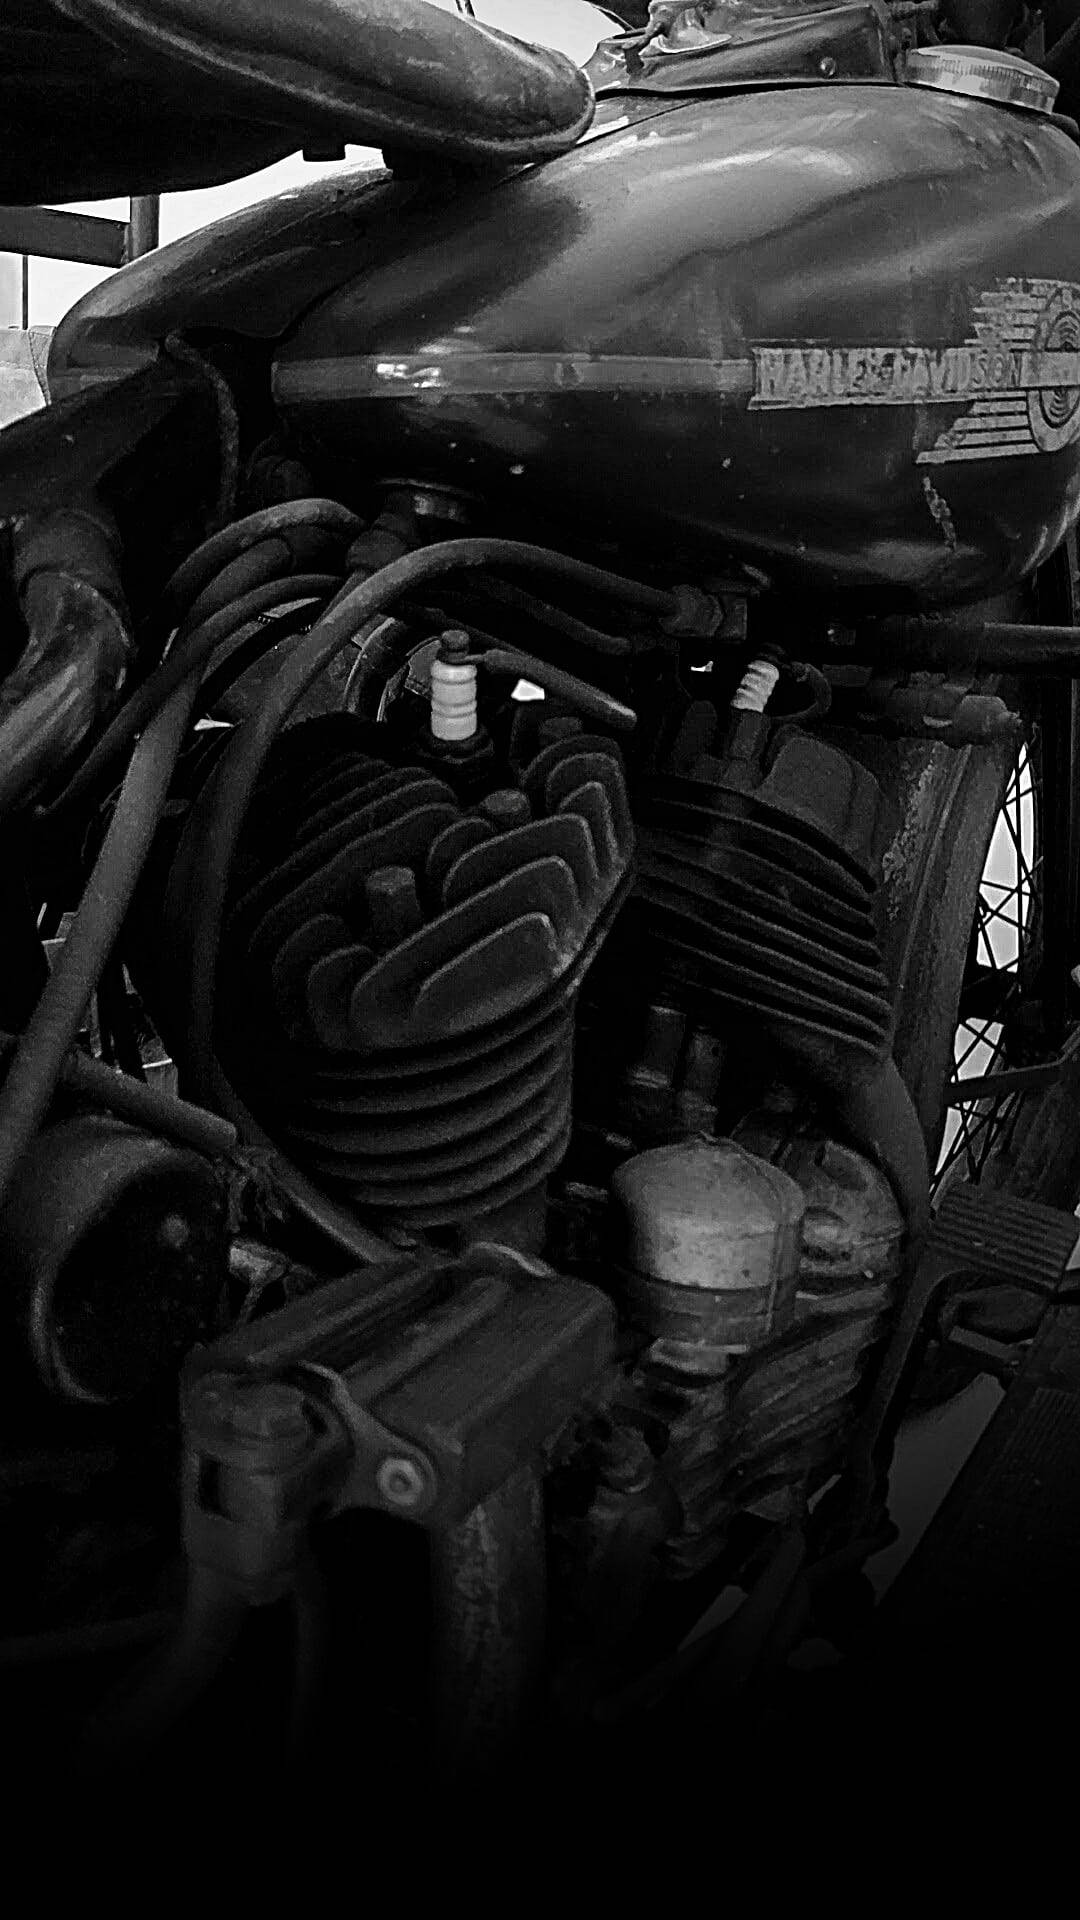 Black Engine Harley Davidson Mobile Wallpaper